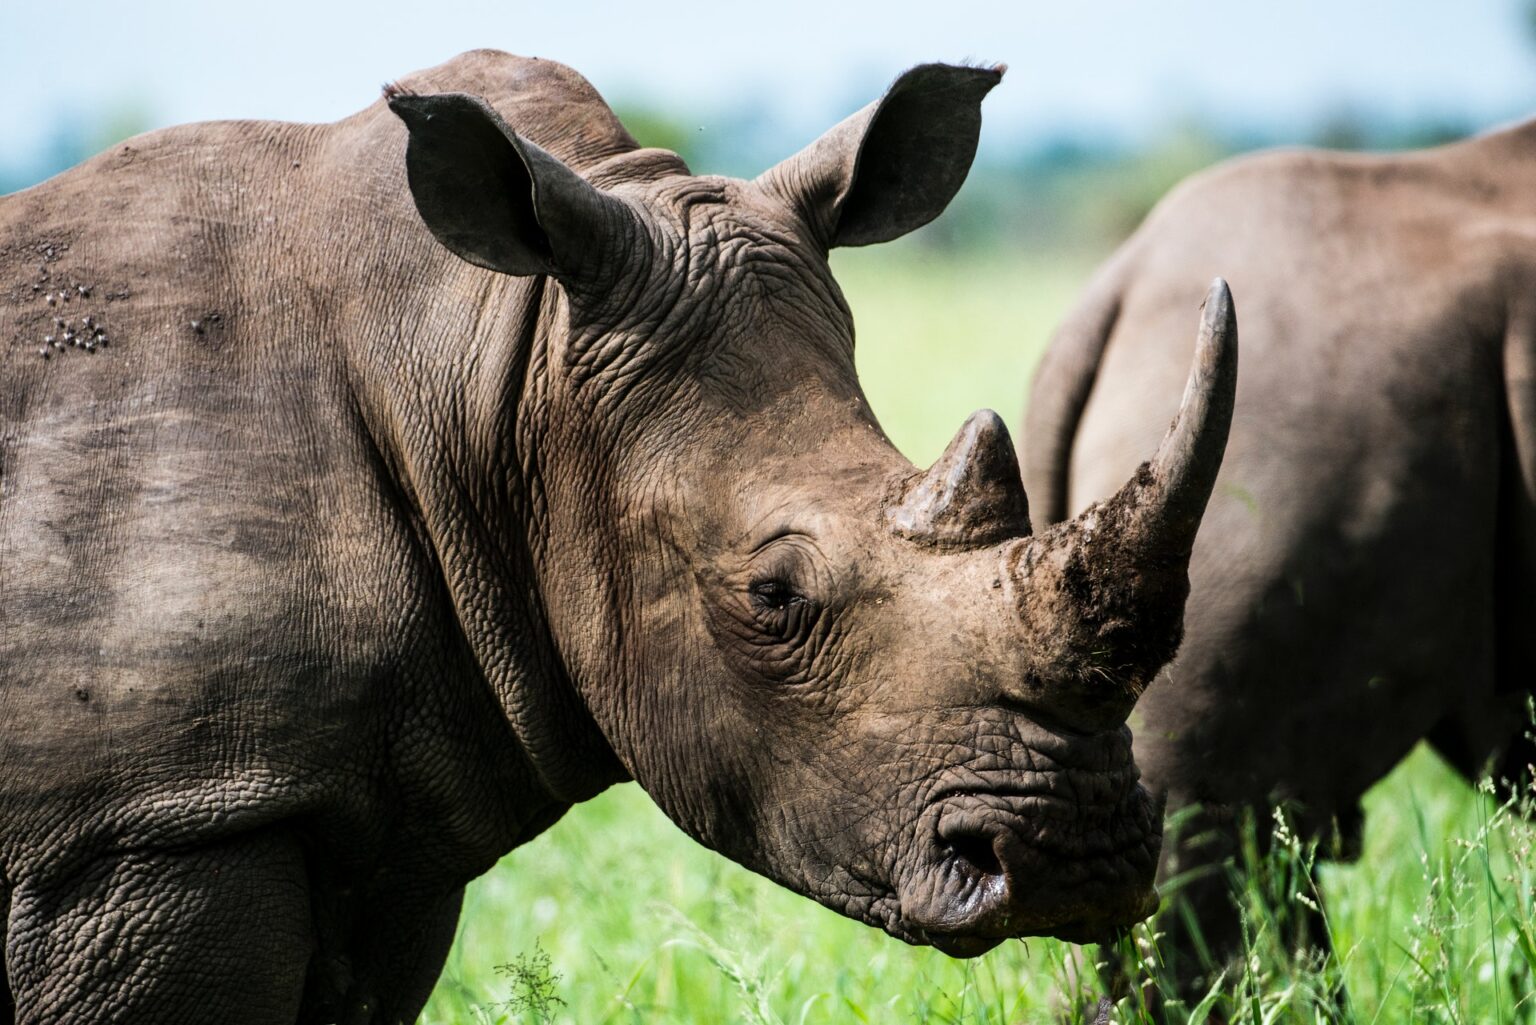 javan rhinoceros.